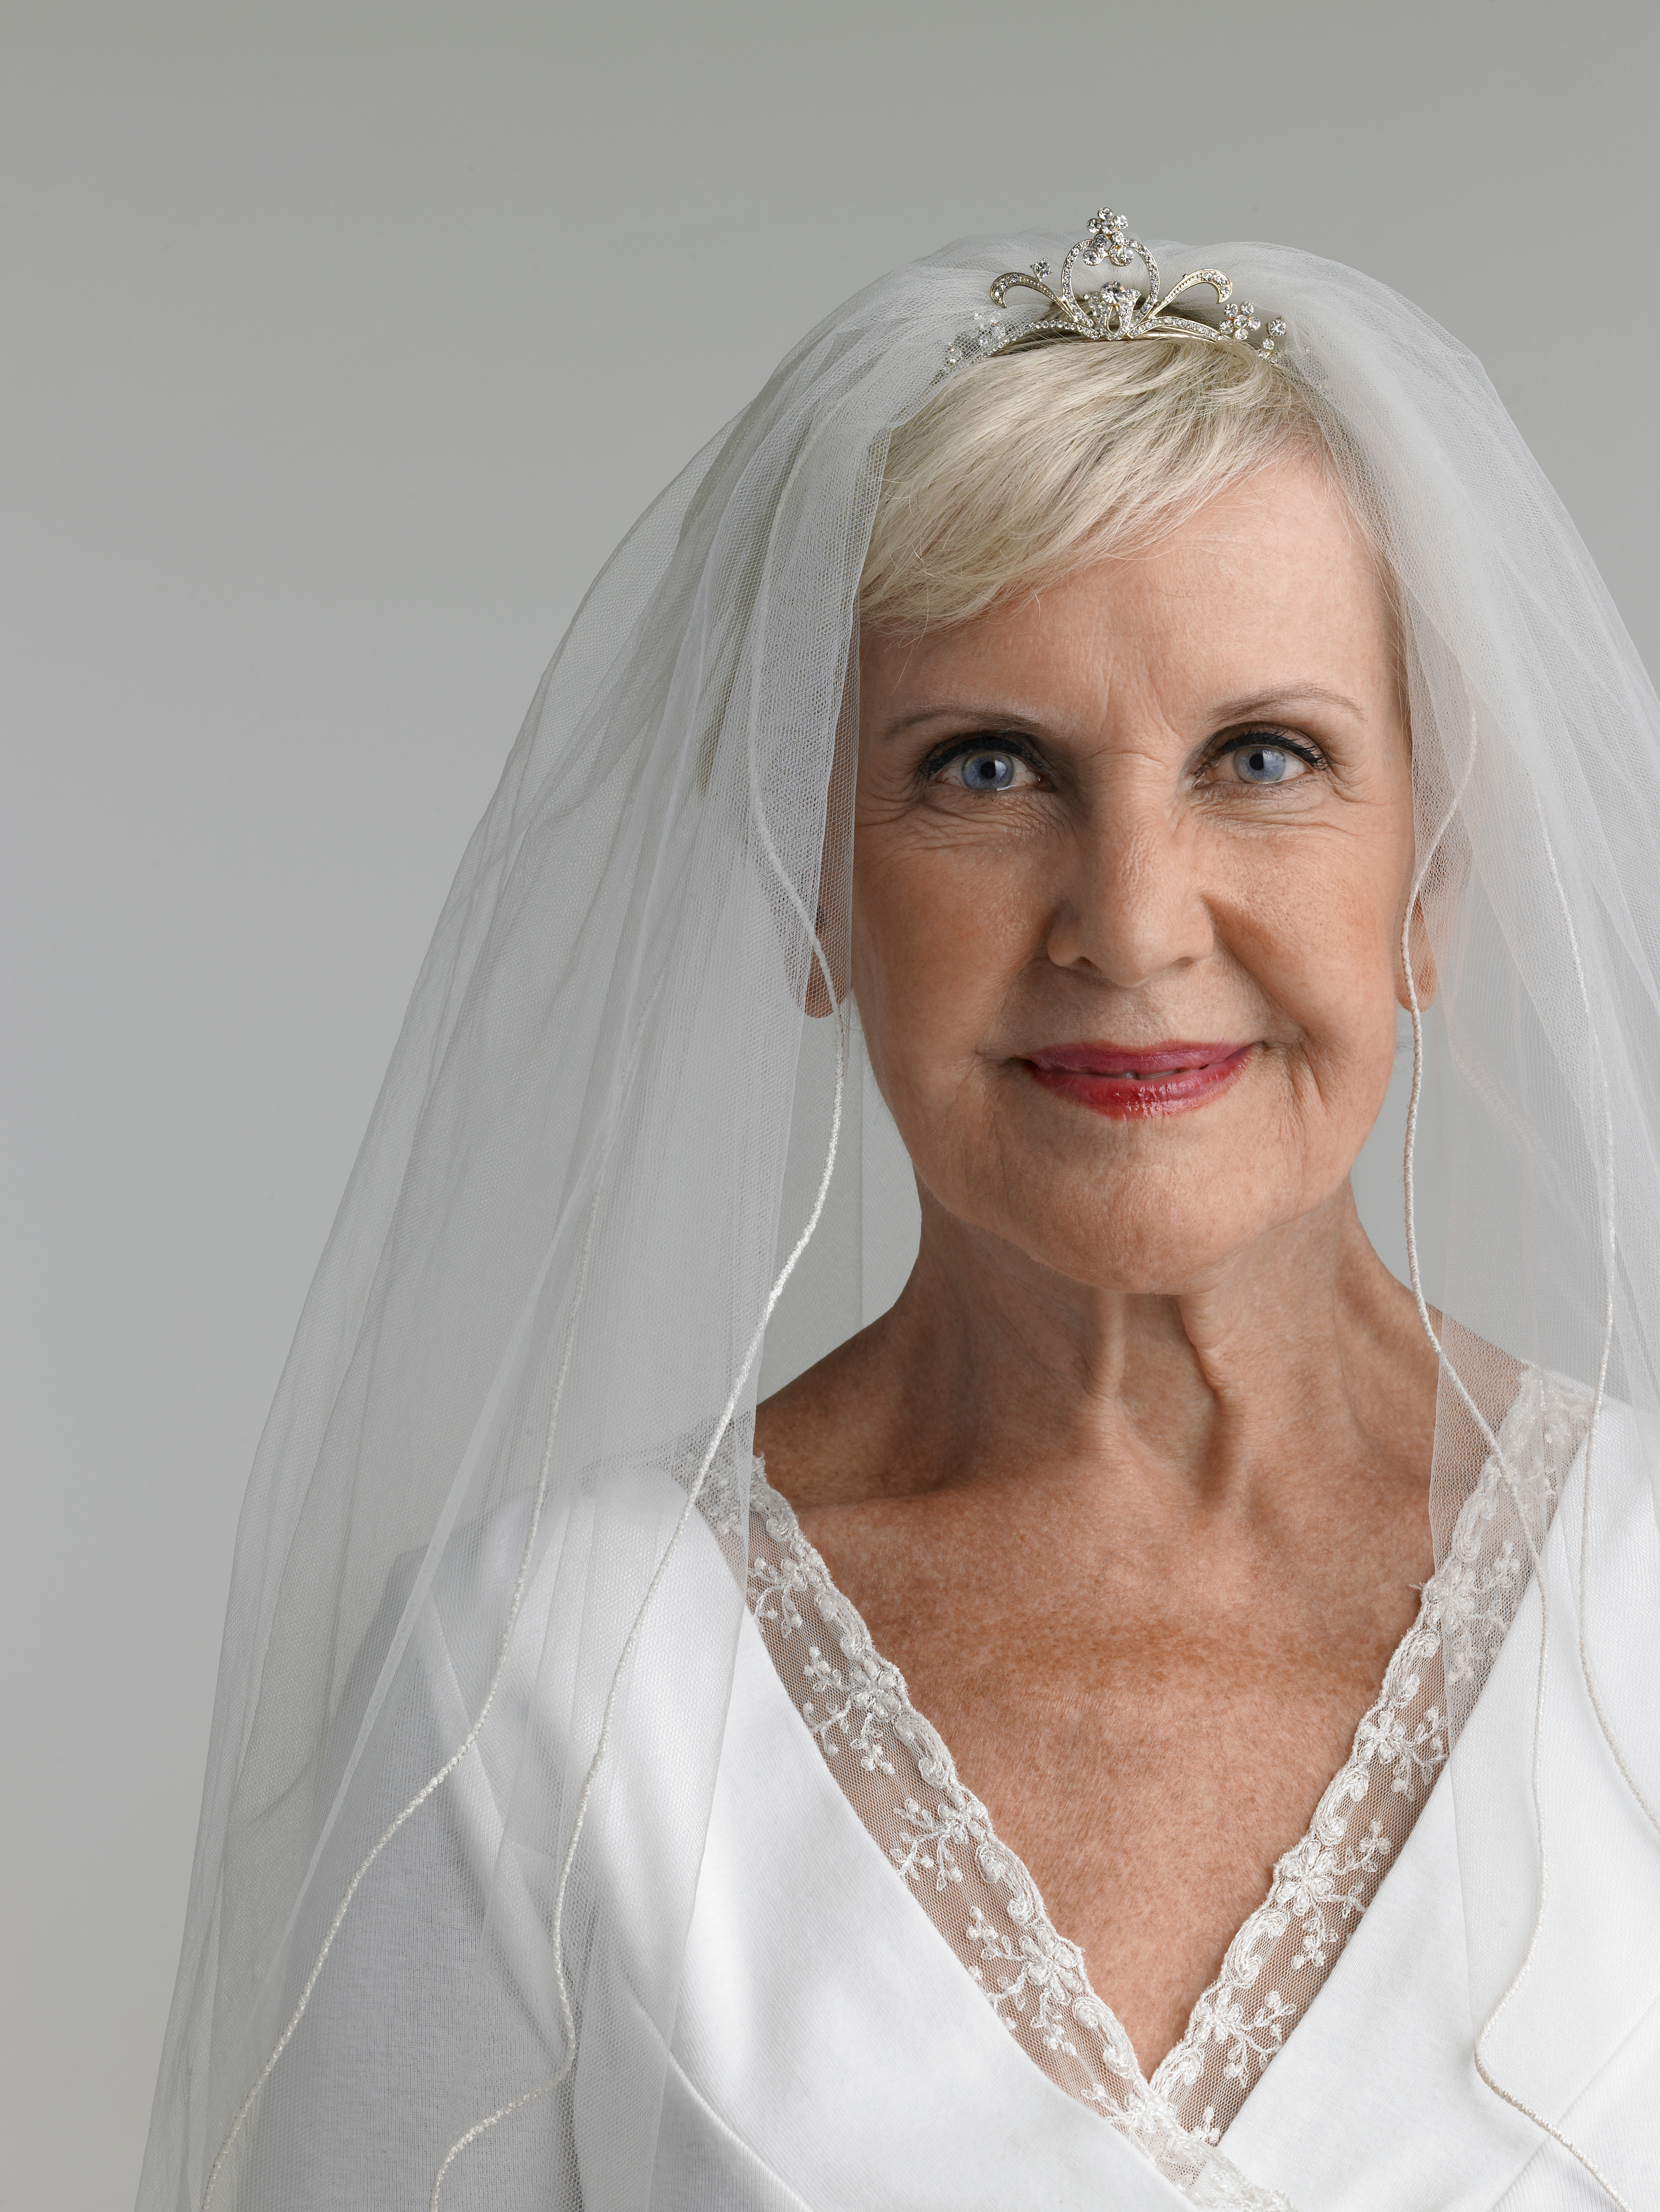 Femme âgée portant une robe de mariée, portrait | Source : Getty Images